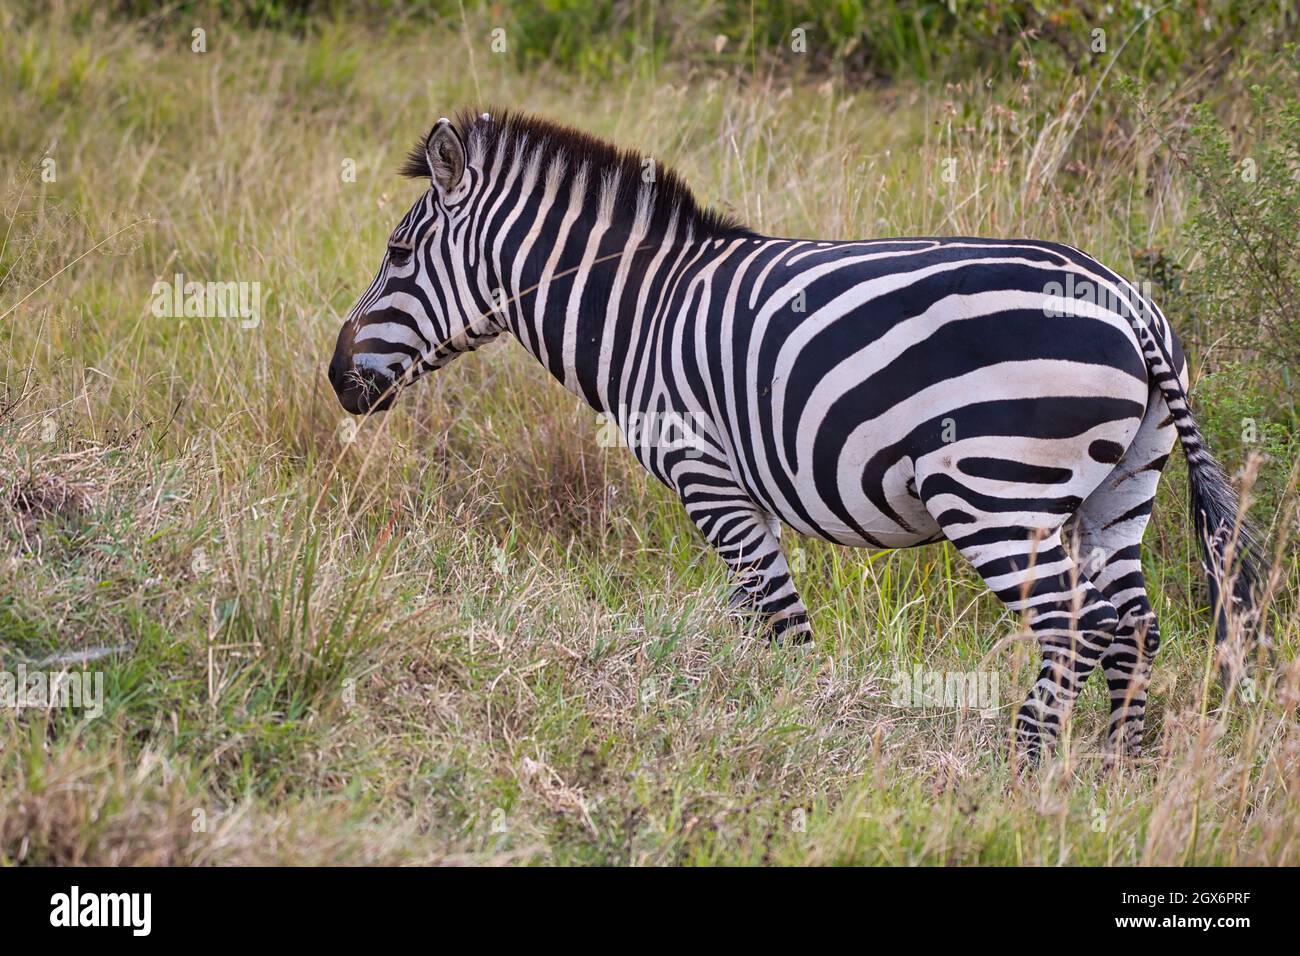 La cebra planicie, Equus quagga, con sus anchas rayas negras se encuentra en la hierba alta del Masai Mara Foto de stock